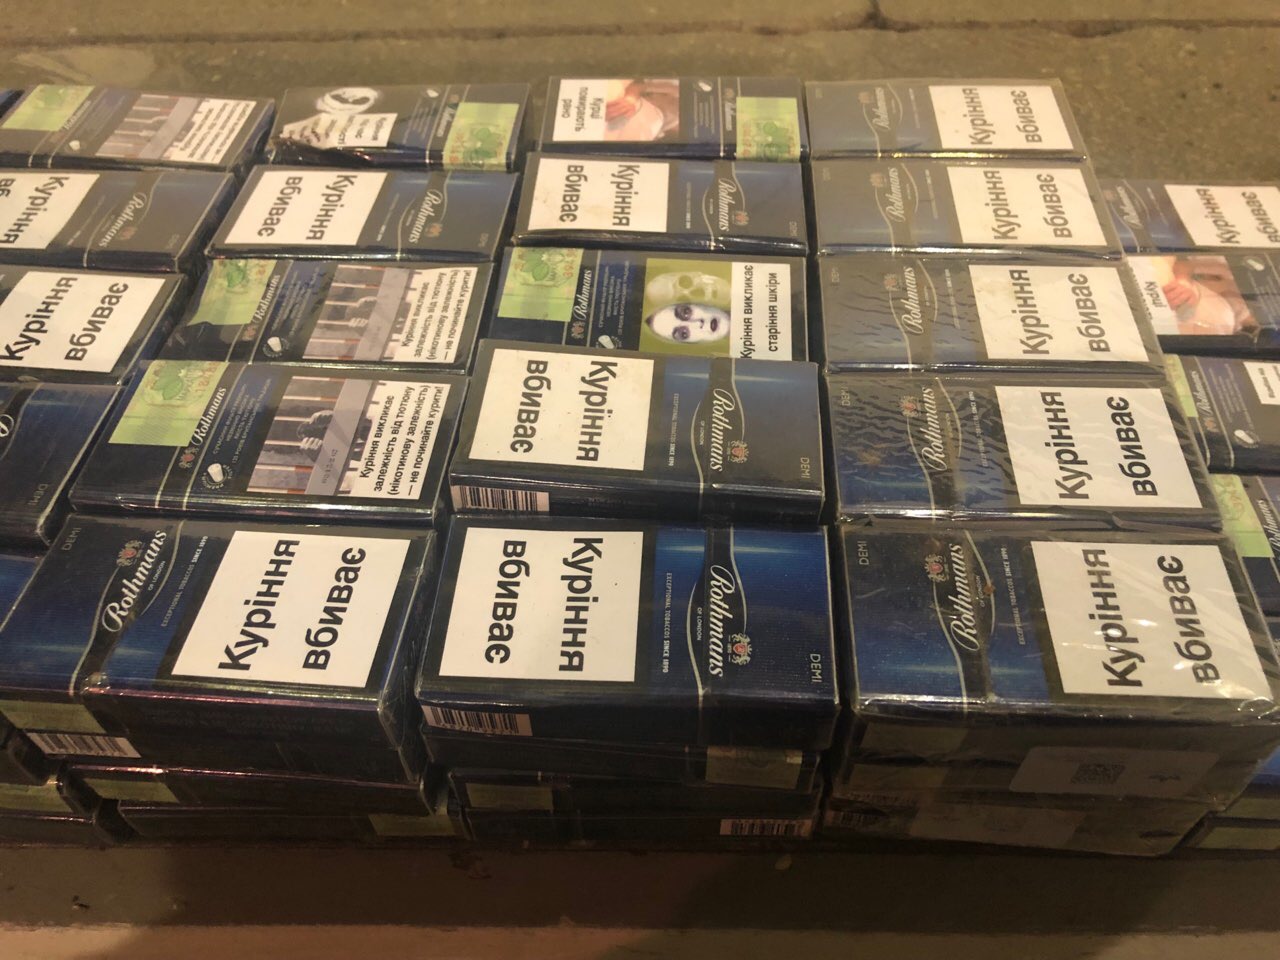 Минулої доби, 21 грудня, в зоні митного контролю митного посту «Тиса» Закарпатської митниці ДФС припинено спробу незаконного вивезення з України тютюнових виробів.